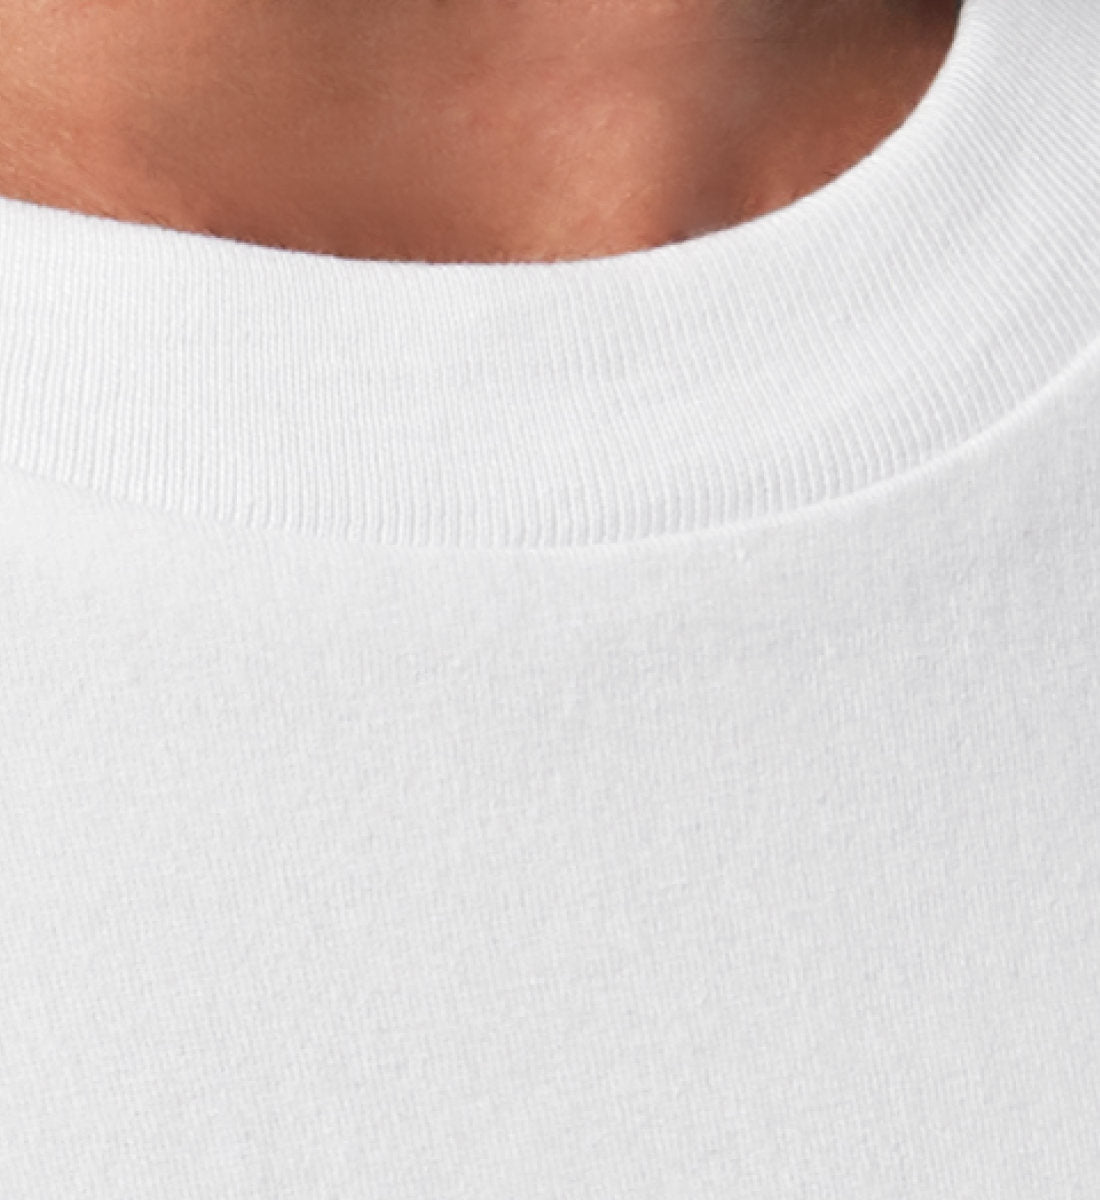 Weißes T-Shirt Unisex Relaxed Fit für Frauen und Männer bedruckt mit dem Design der Roger Rockawoo Kollektion Guitar Major or Minor